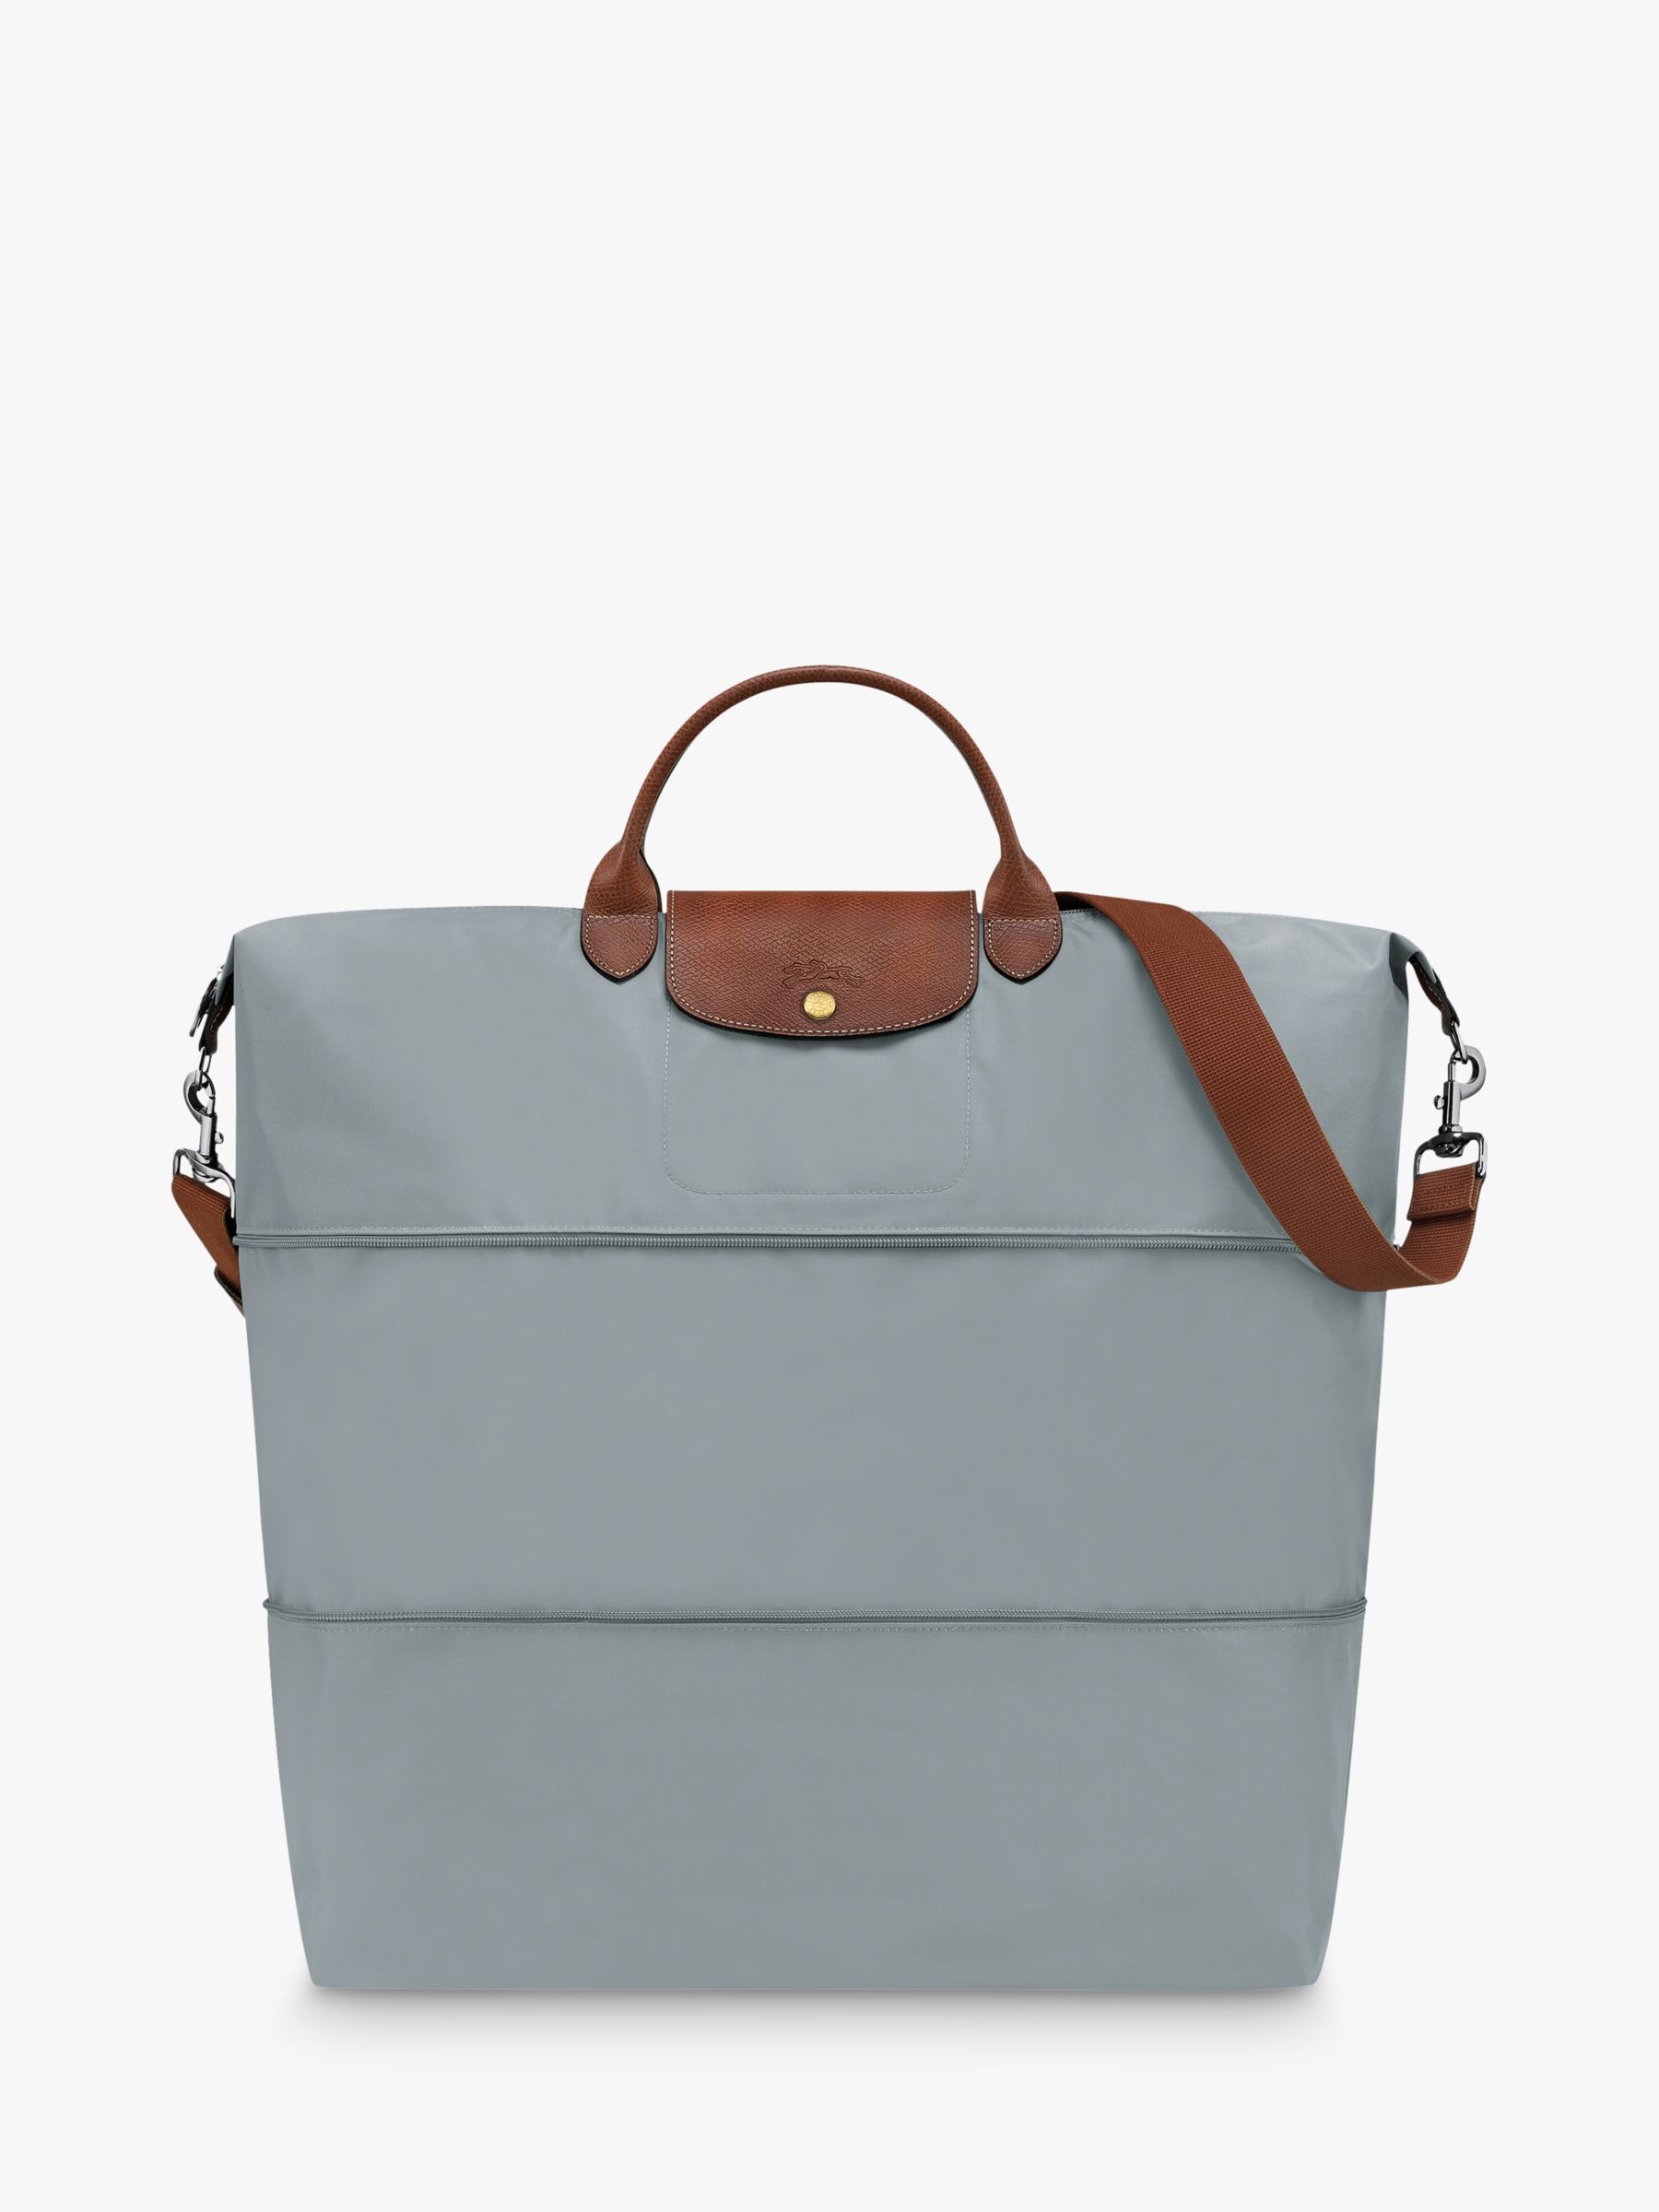 Оригинальная расширяемая дорожная сумка Le Pliage Longchamp, сталь